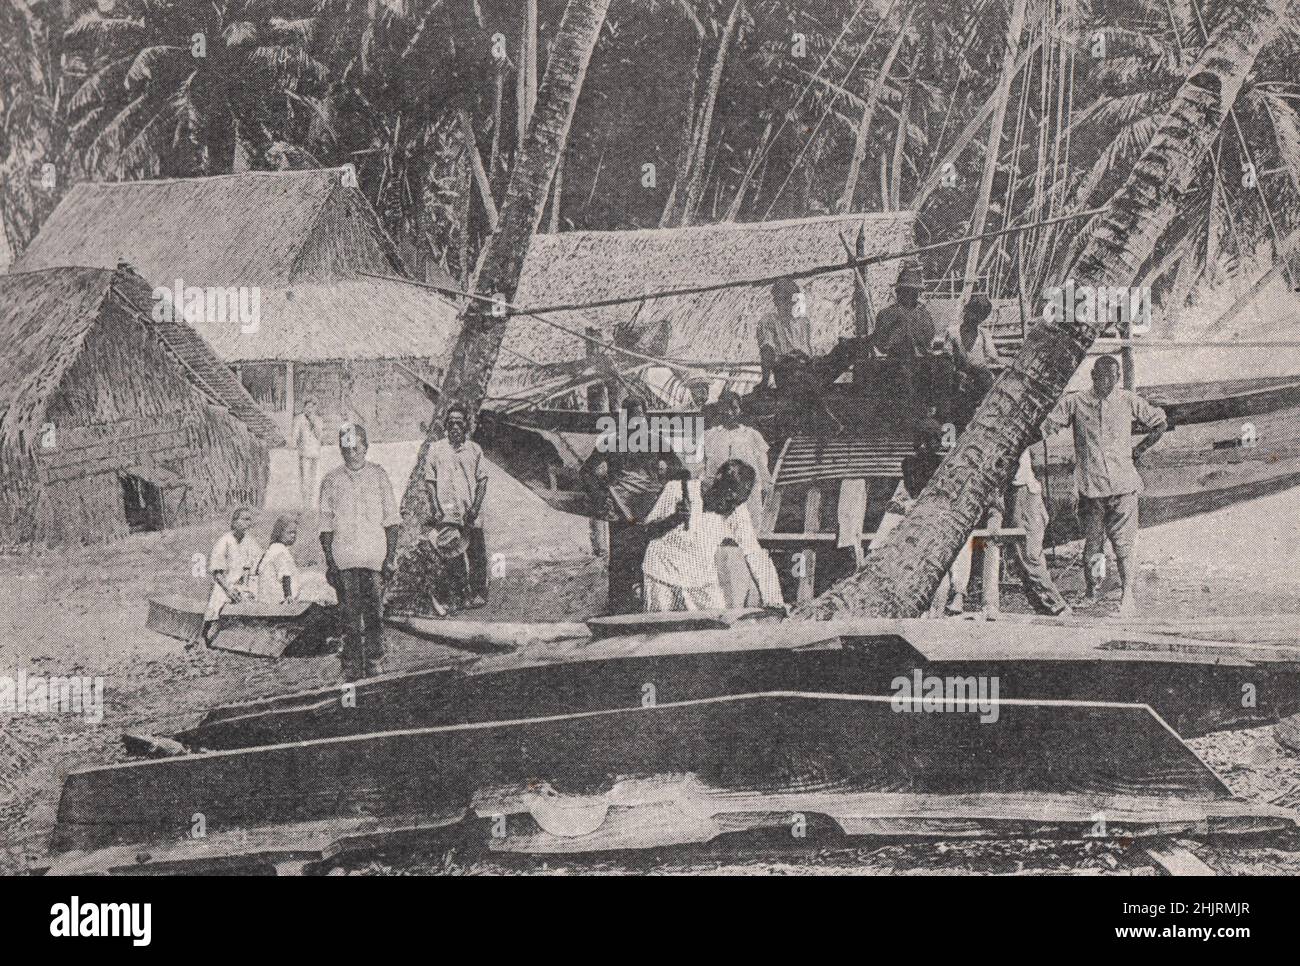 Nativos de las Islas Marshall construyendo canoas. Micronesia. Islas del Pacífico Norte (1923) Foto de stock